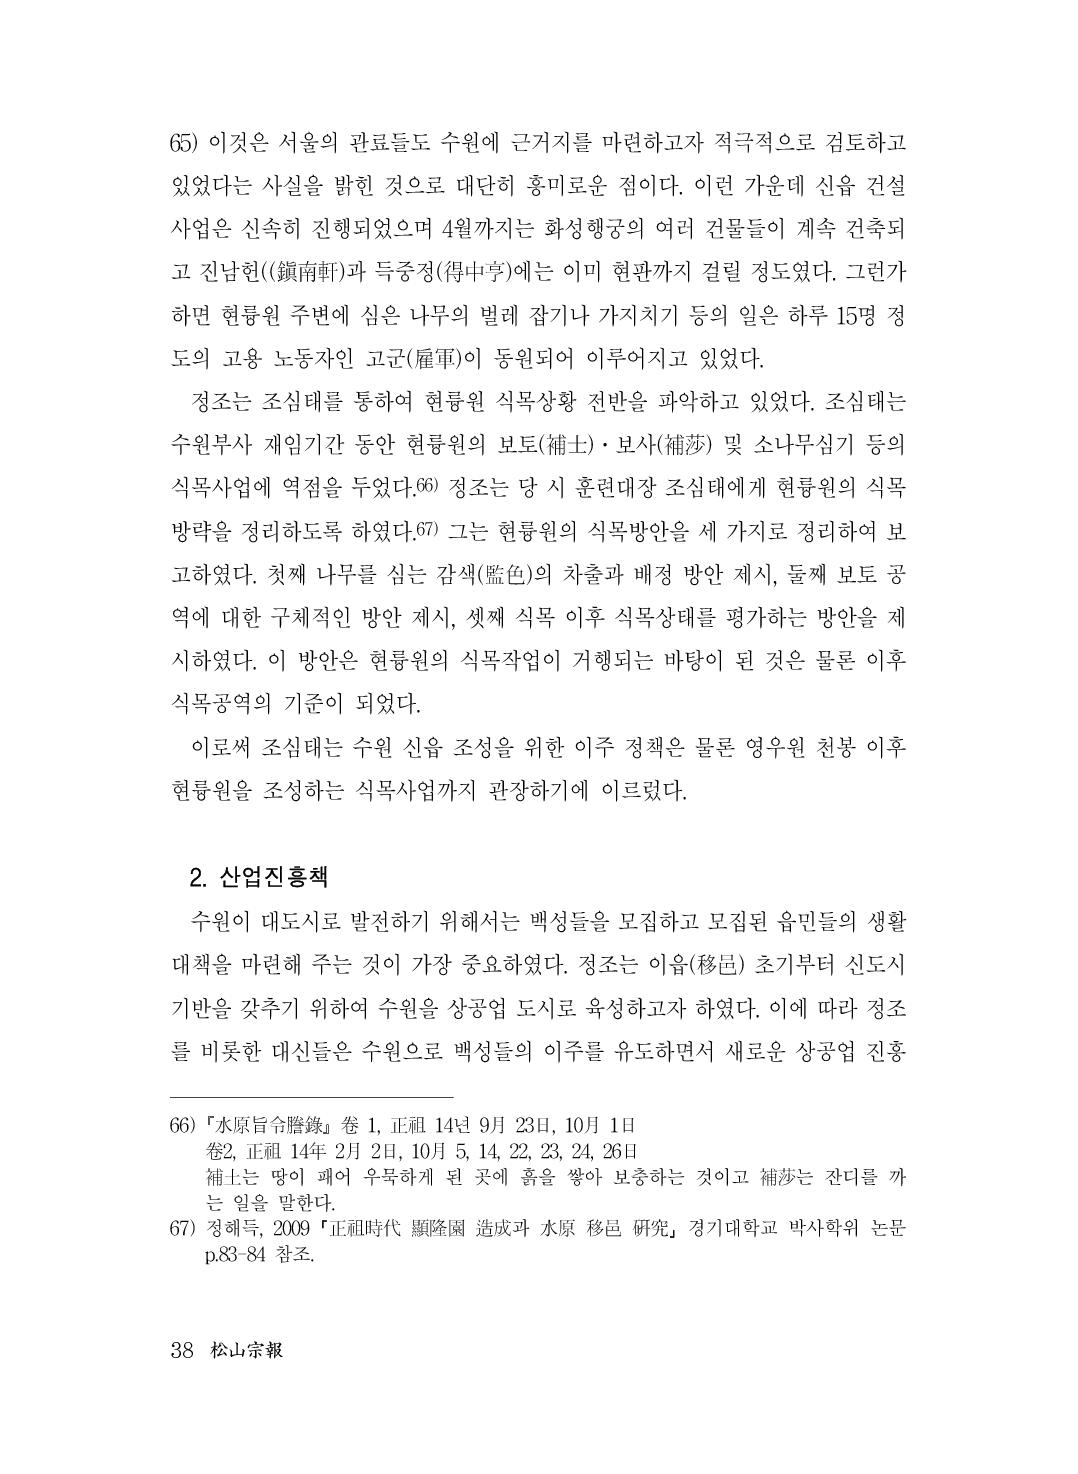 (전체) 송산종보(27호)(최종)_39.jpg